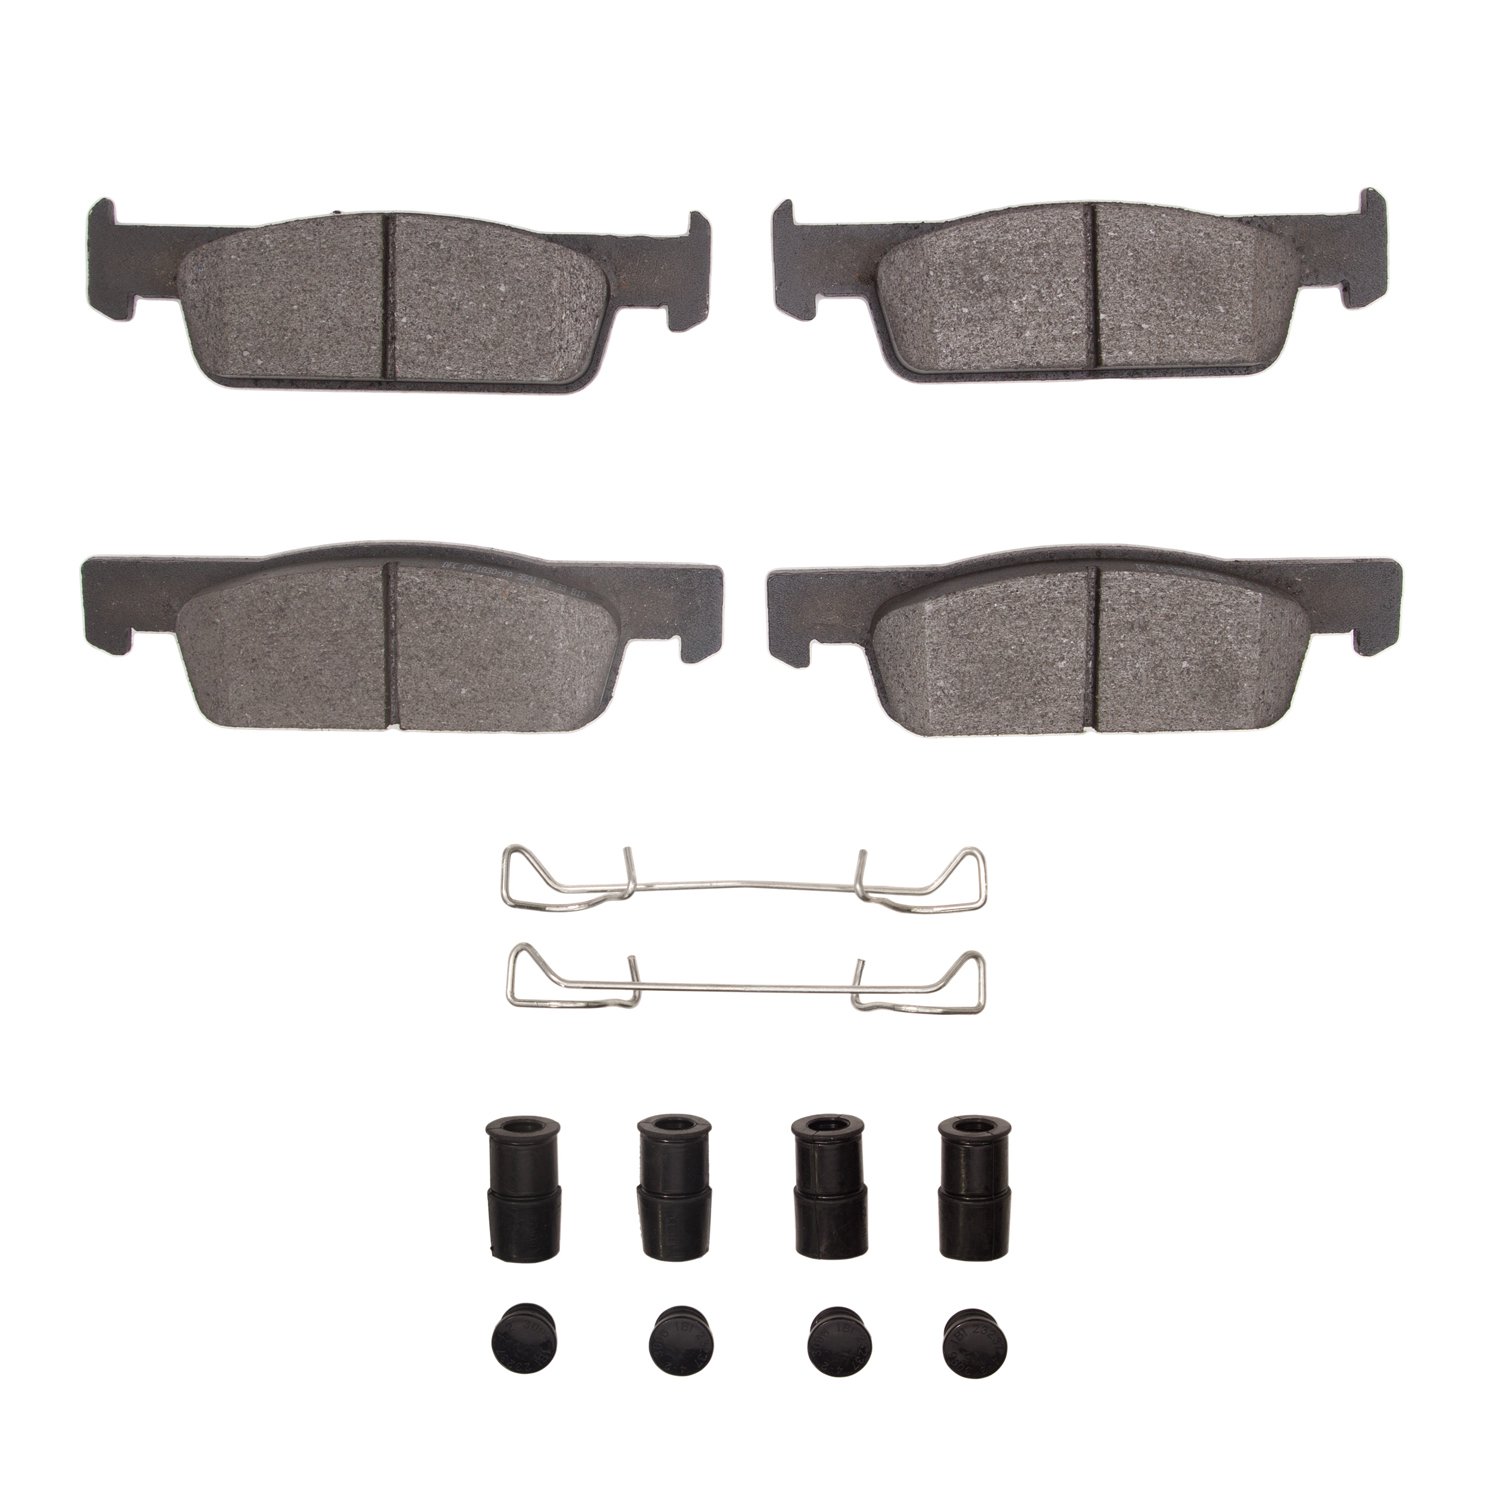 Semi-Metallic Brake Pads & Hardware Kit, 2015-2017 Renault, Position: Front